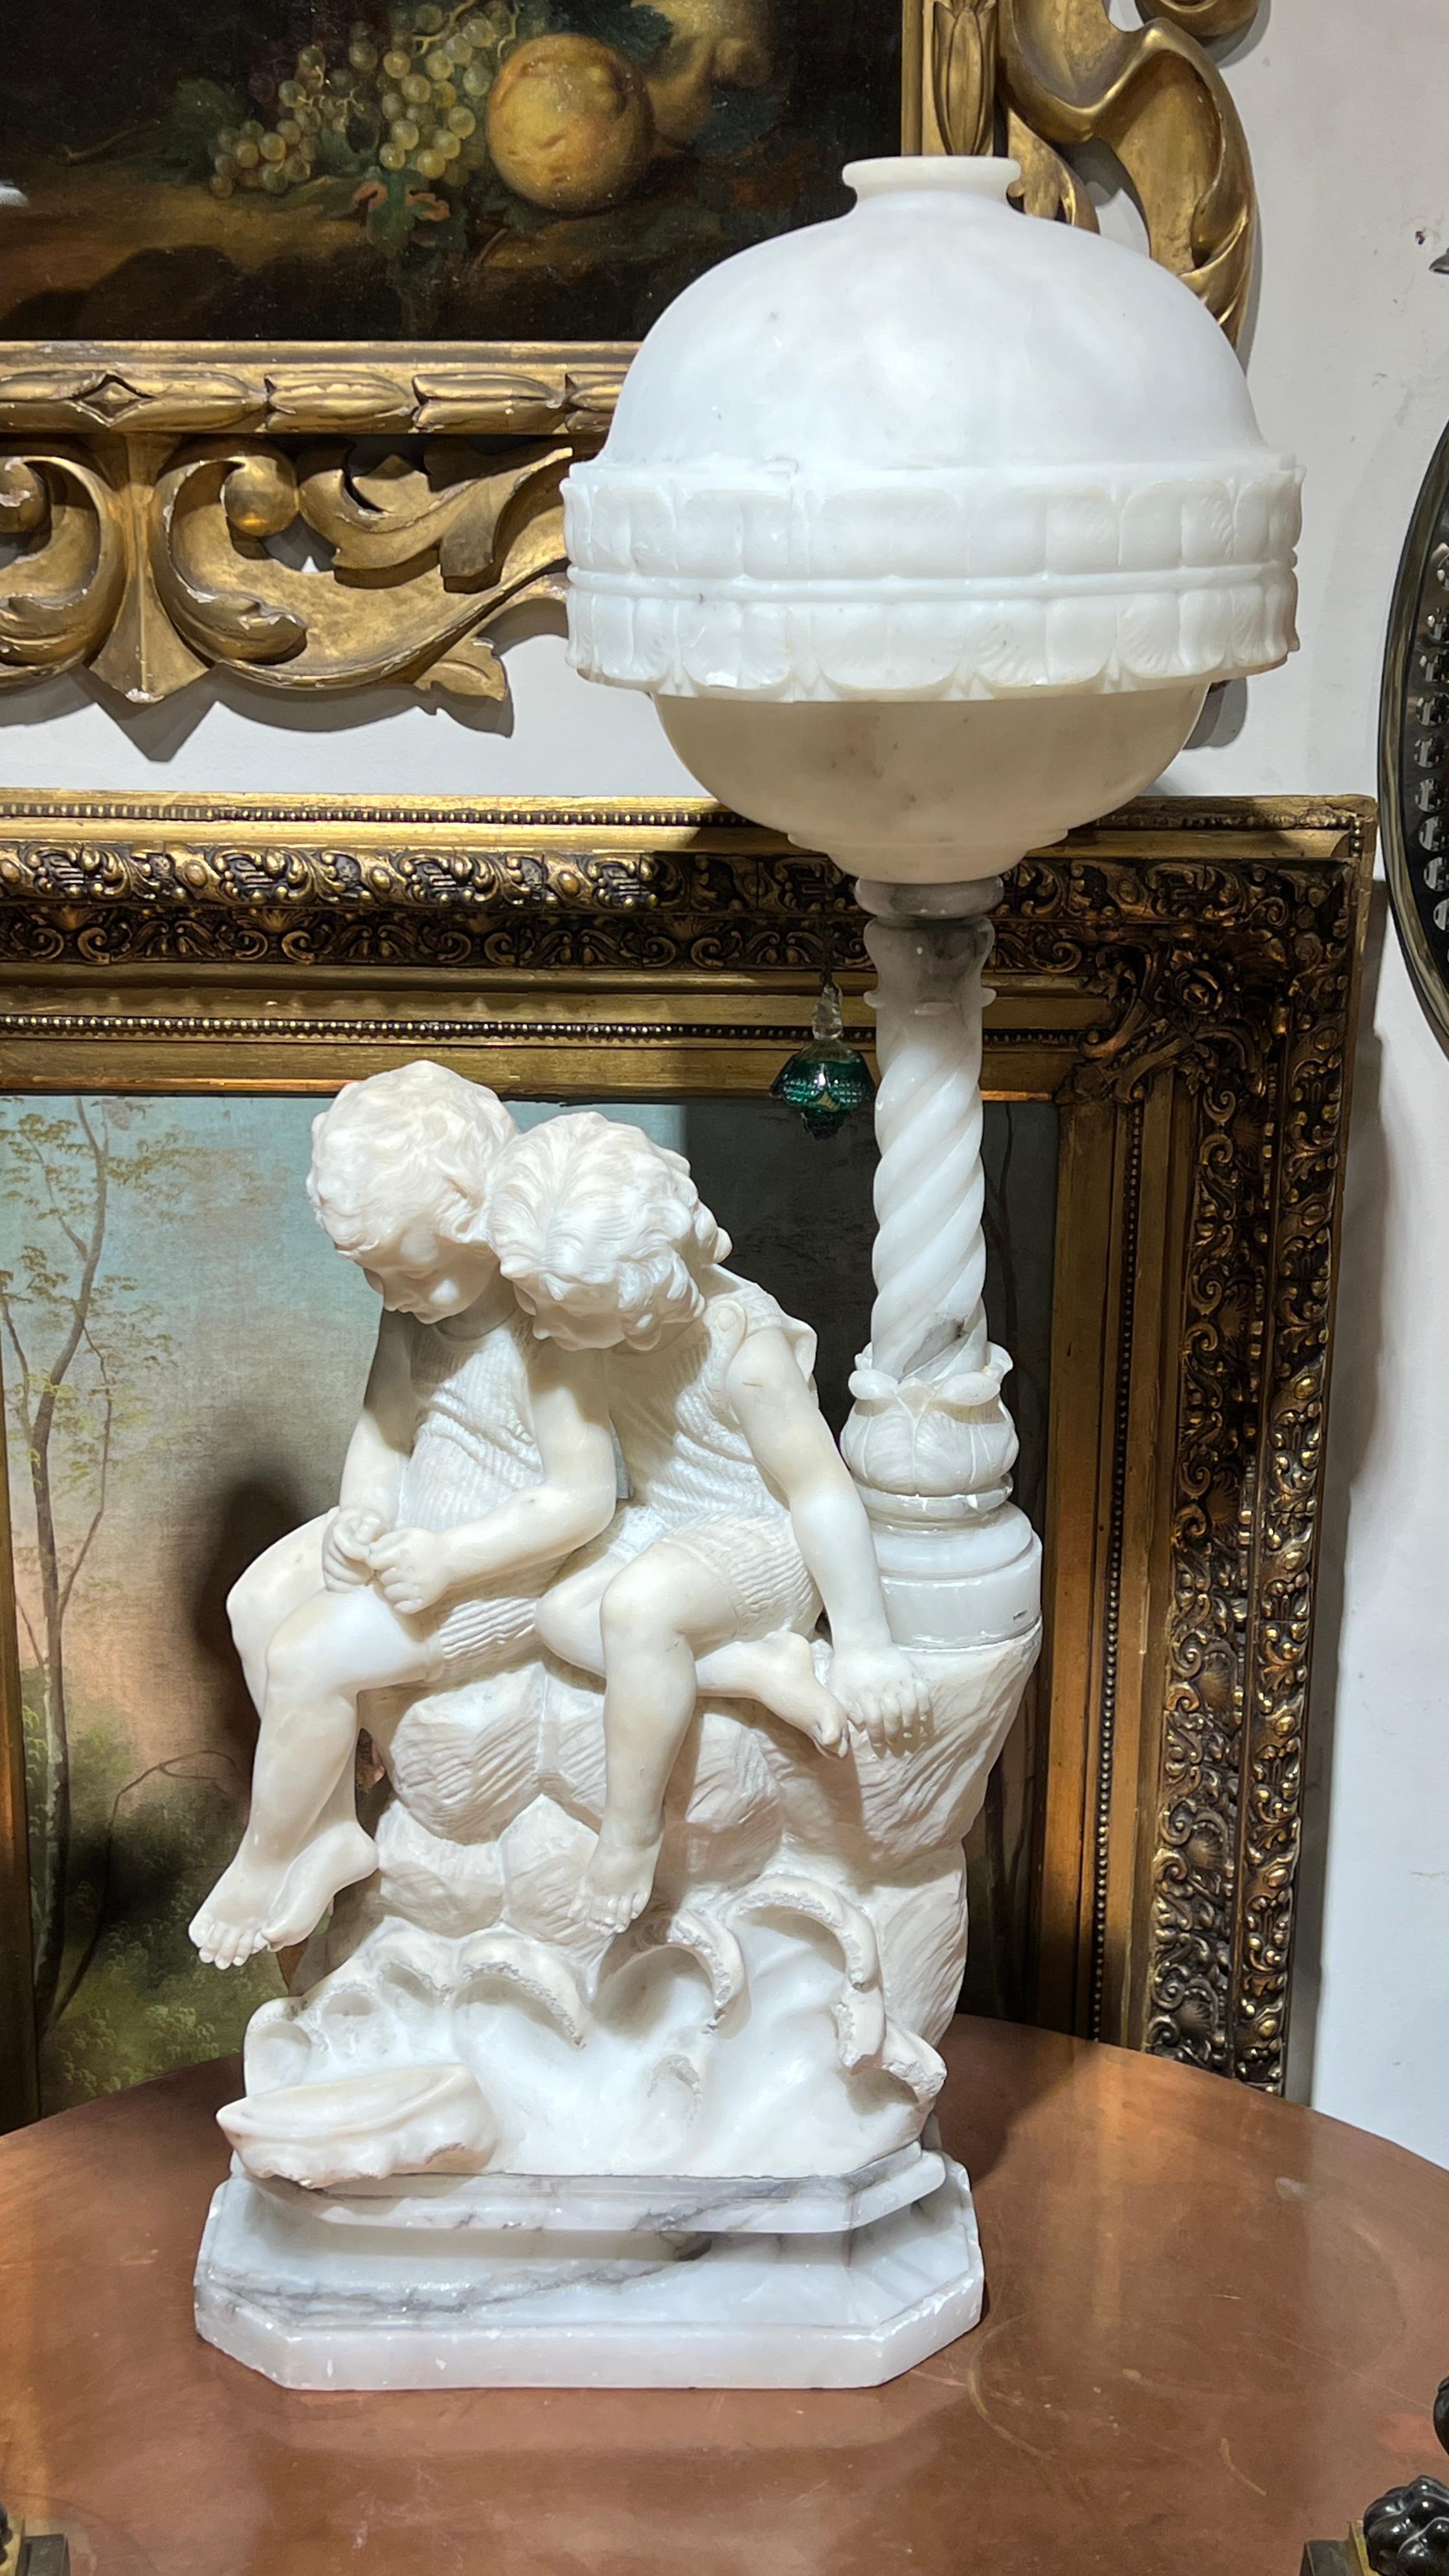 Ravissante lampe en albâtre sculptée à la main représentant un jeune garçon et une jeune fille, signée G Mascagni, attribuée au maître italien Gaspar Mascagni, actif à la fin du XIXe siècle et au début du XXe siècle.